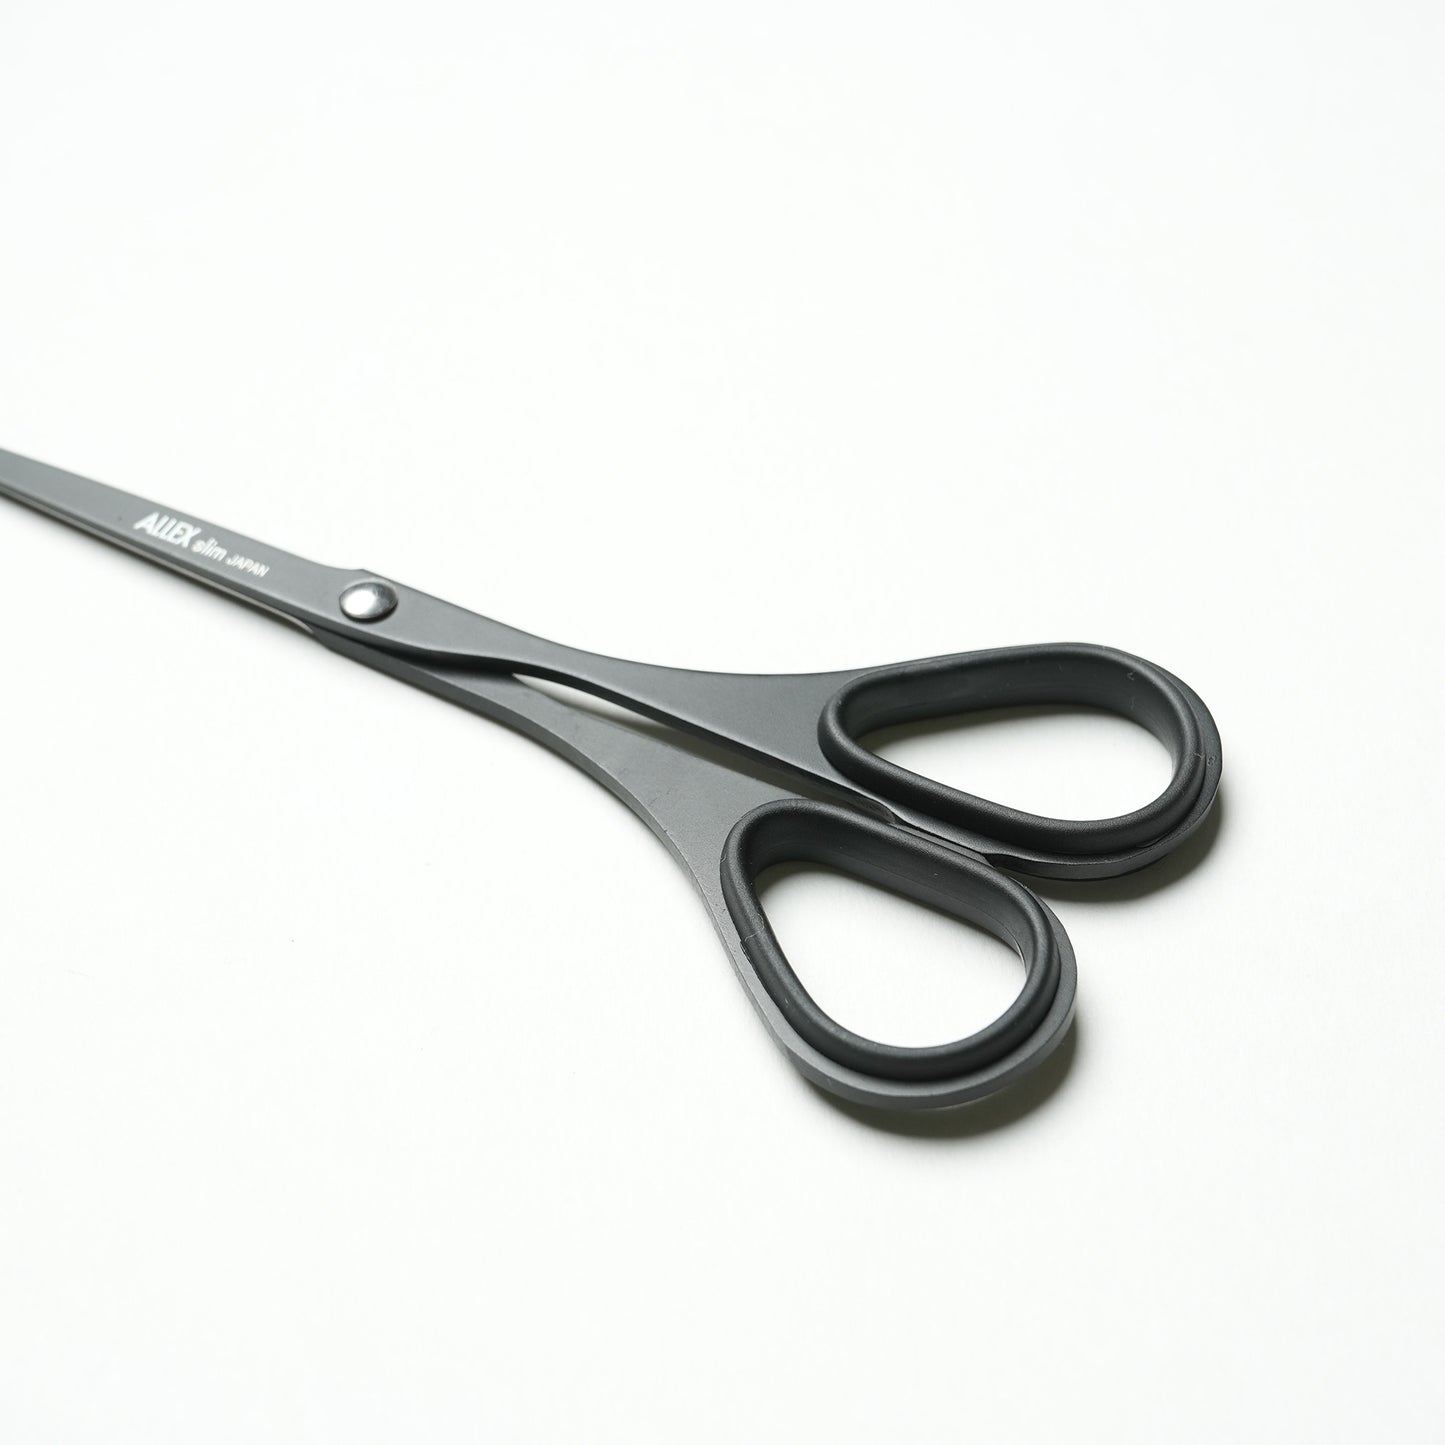 ALLEX Scissors Black